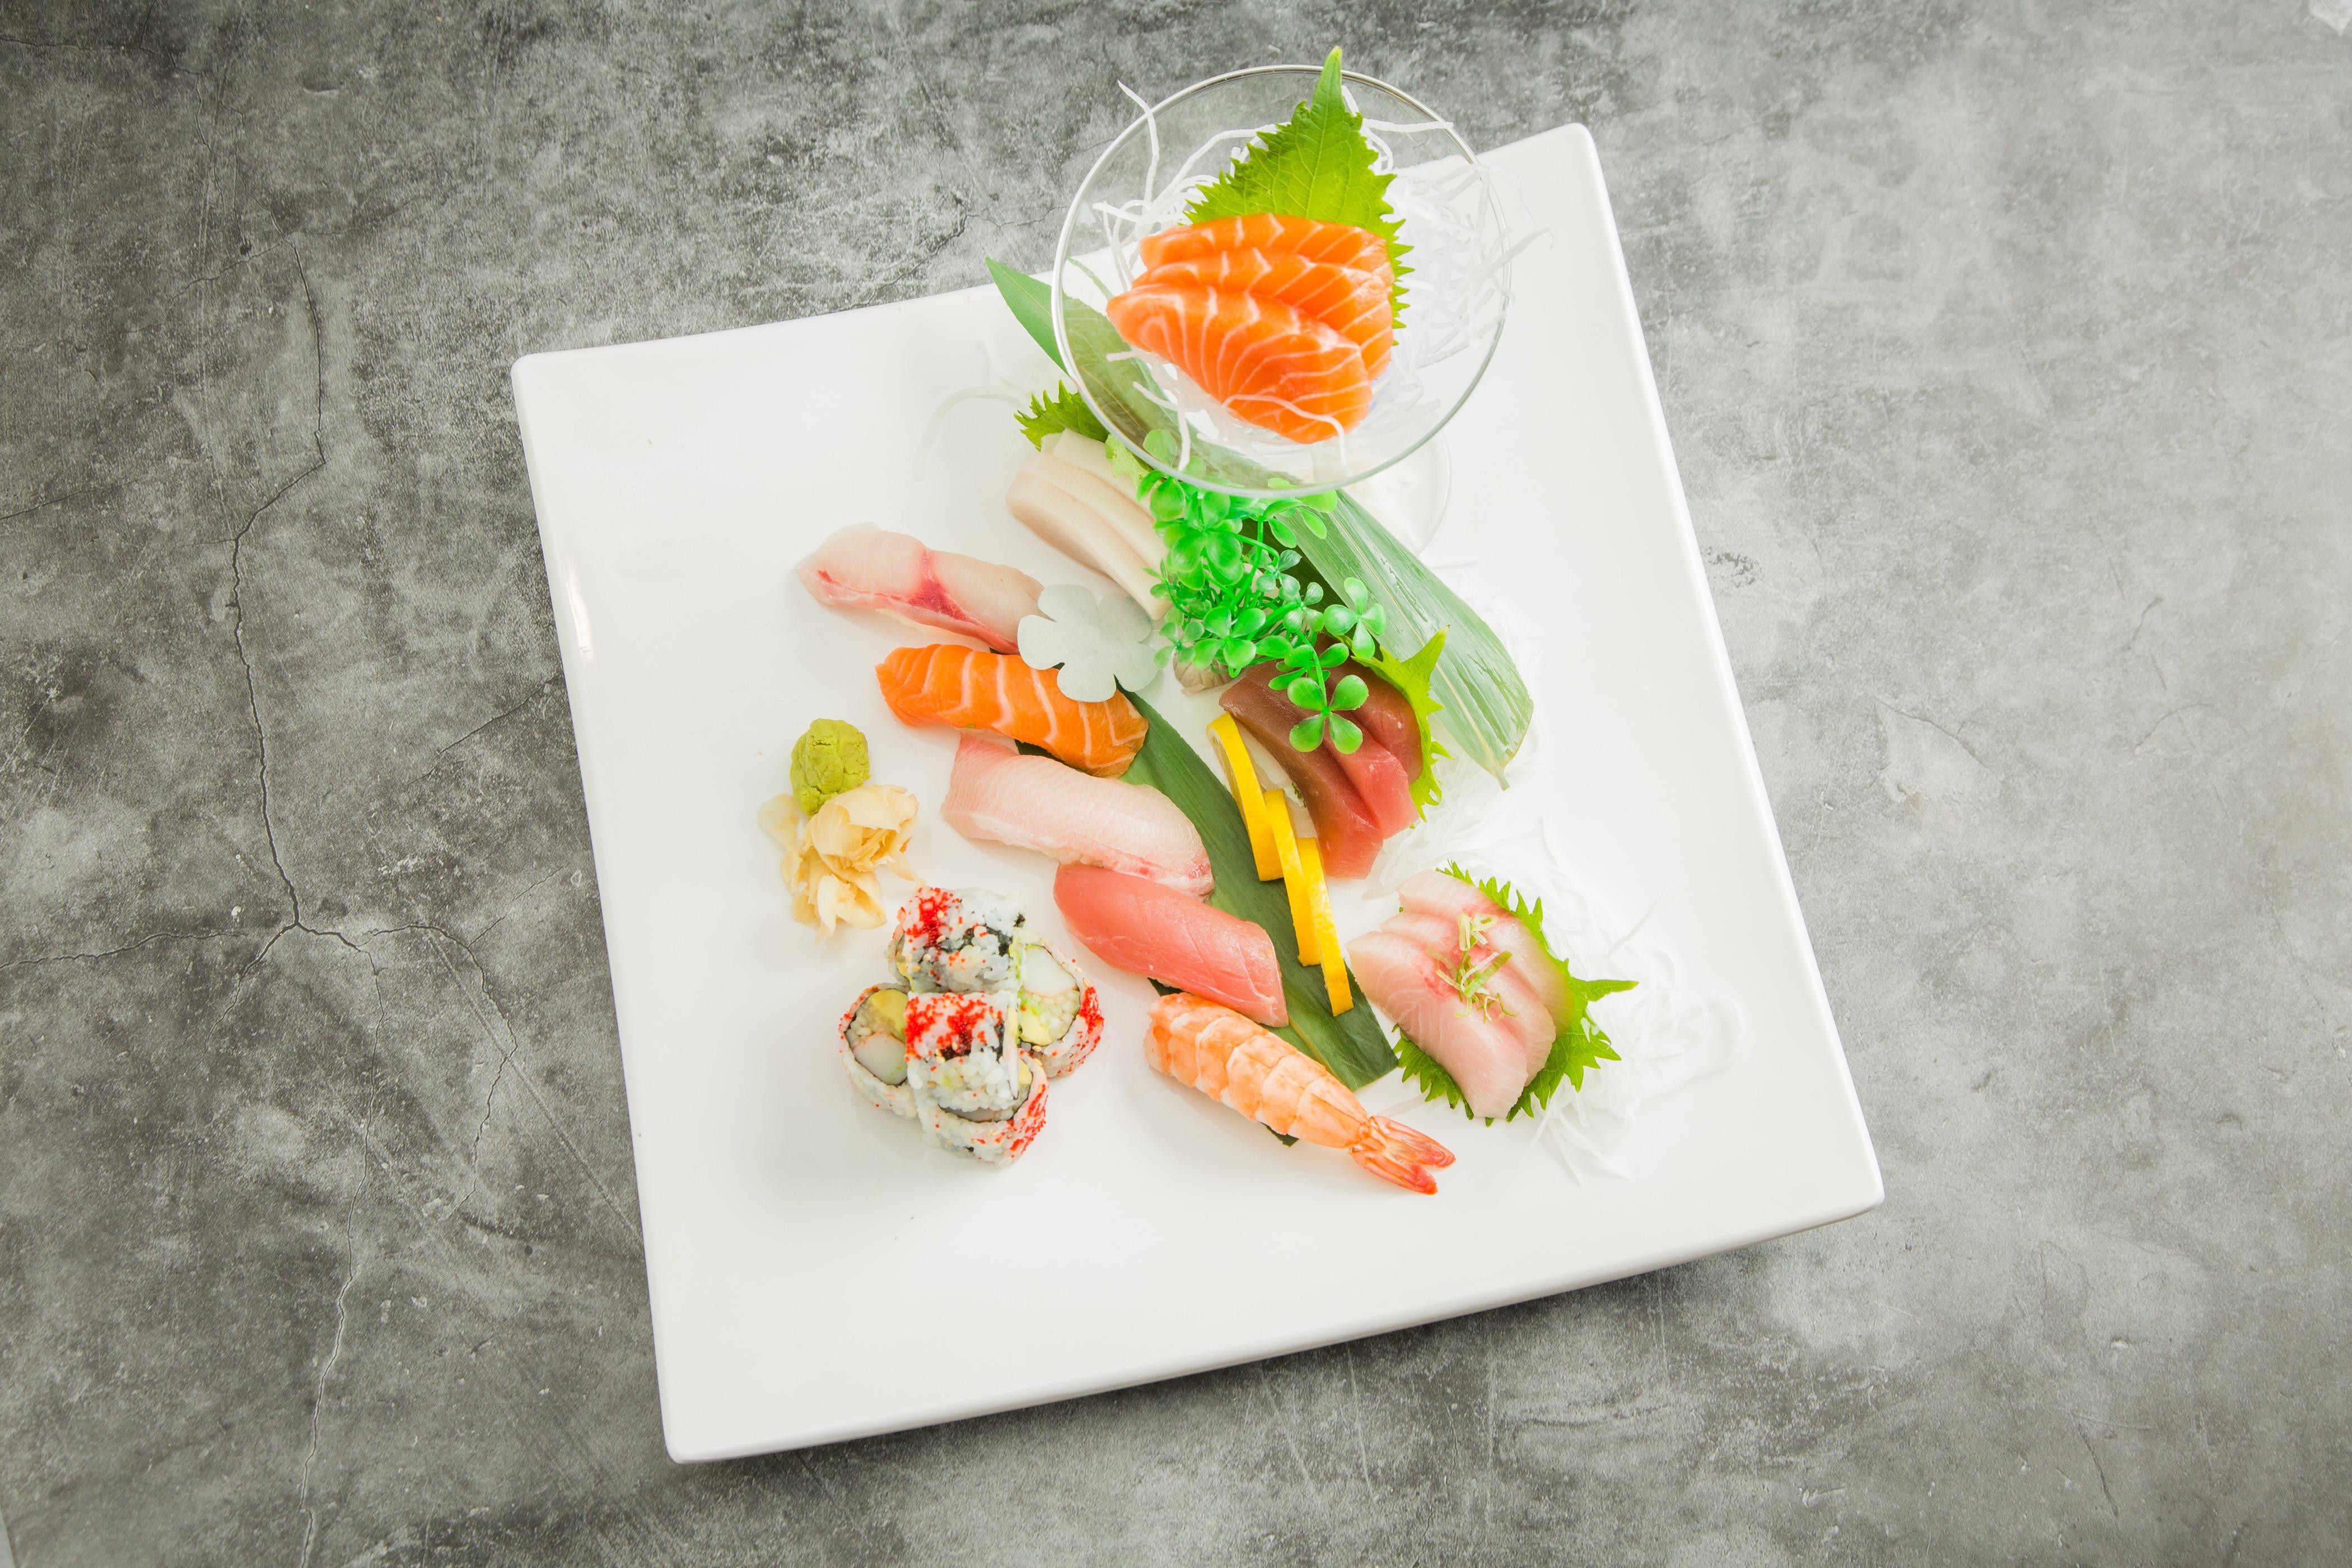 Sushi and Sashimi Combo Lunch